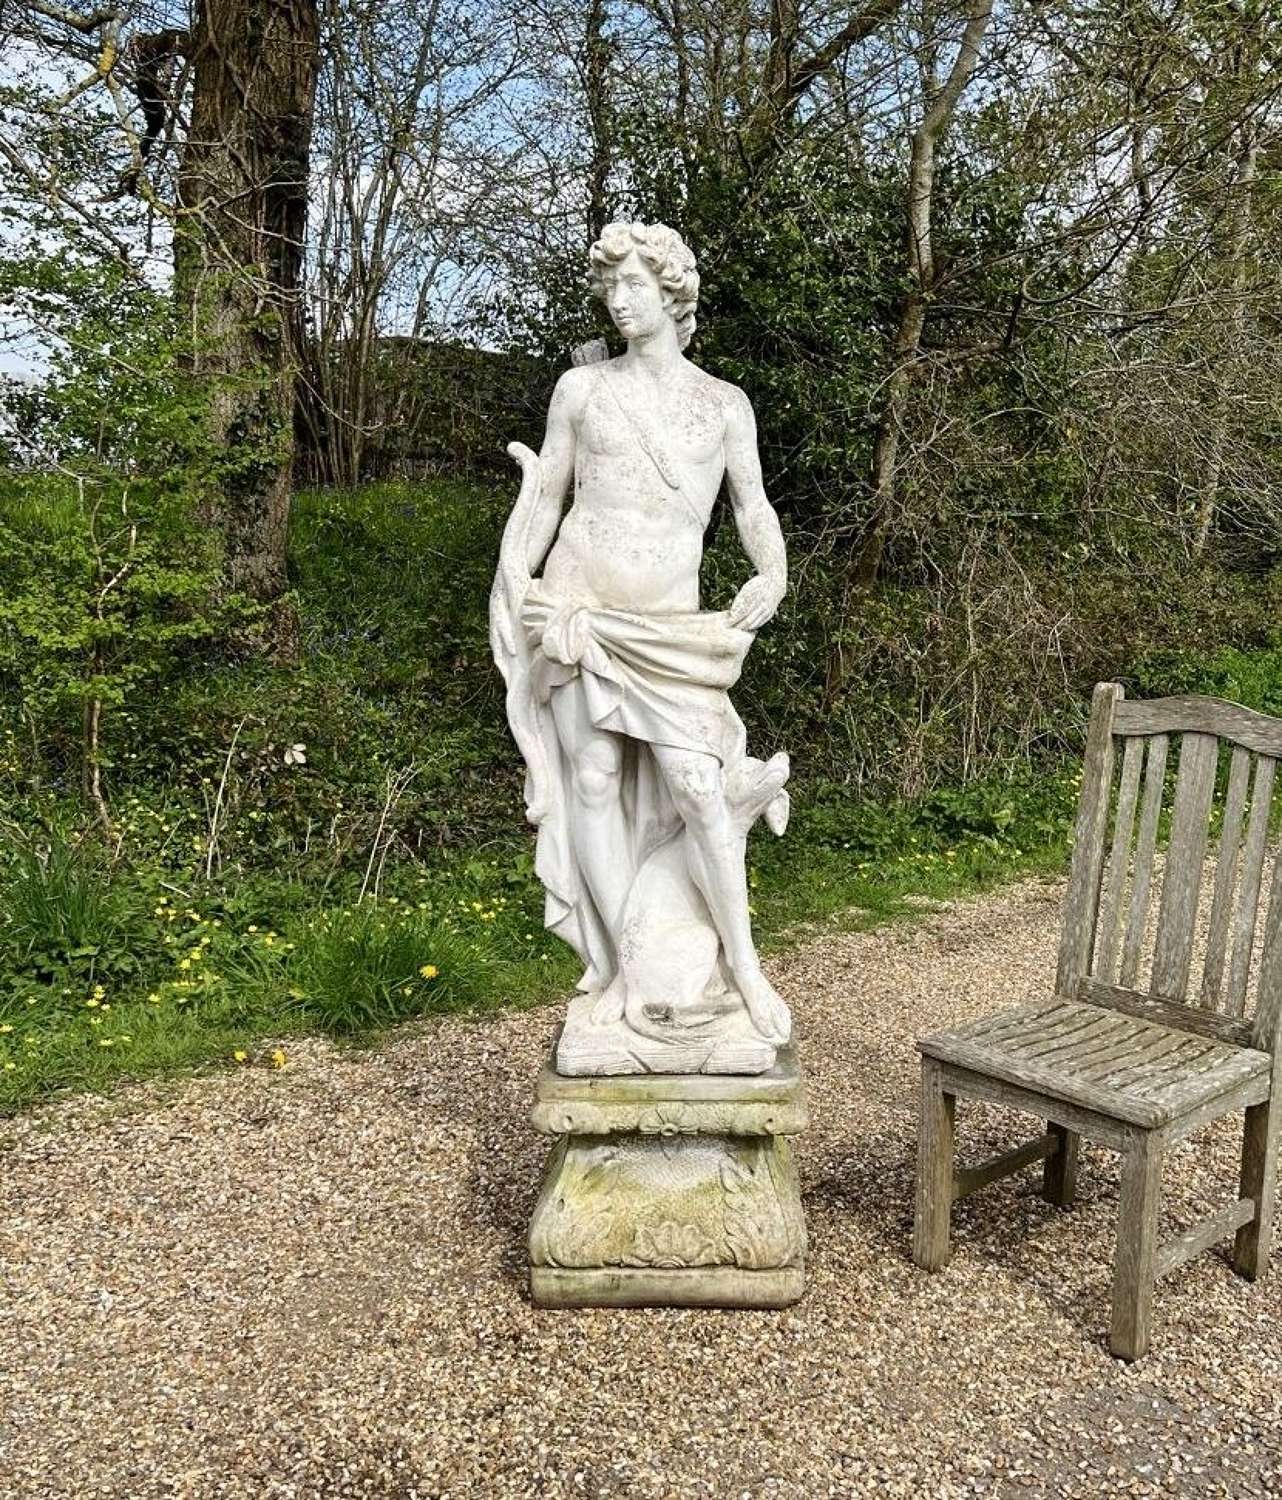 Apollo and Pedestal